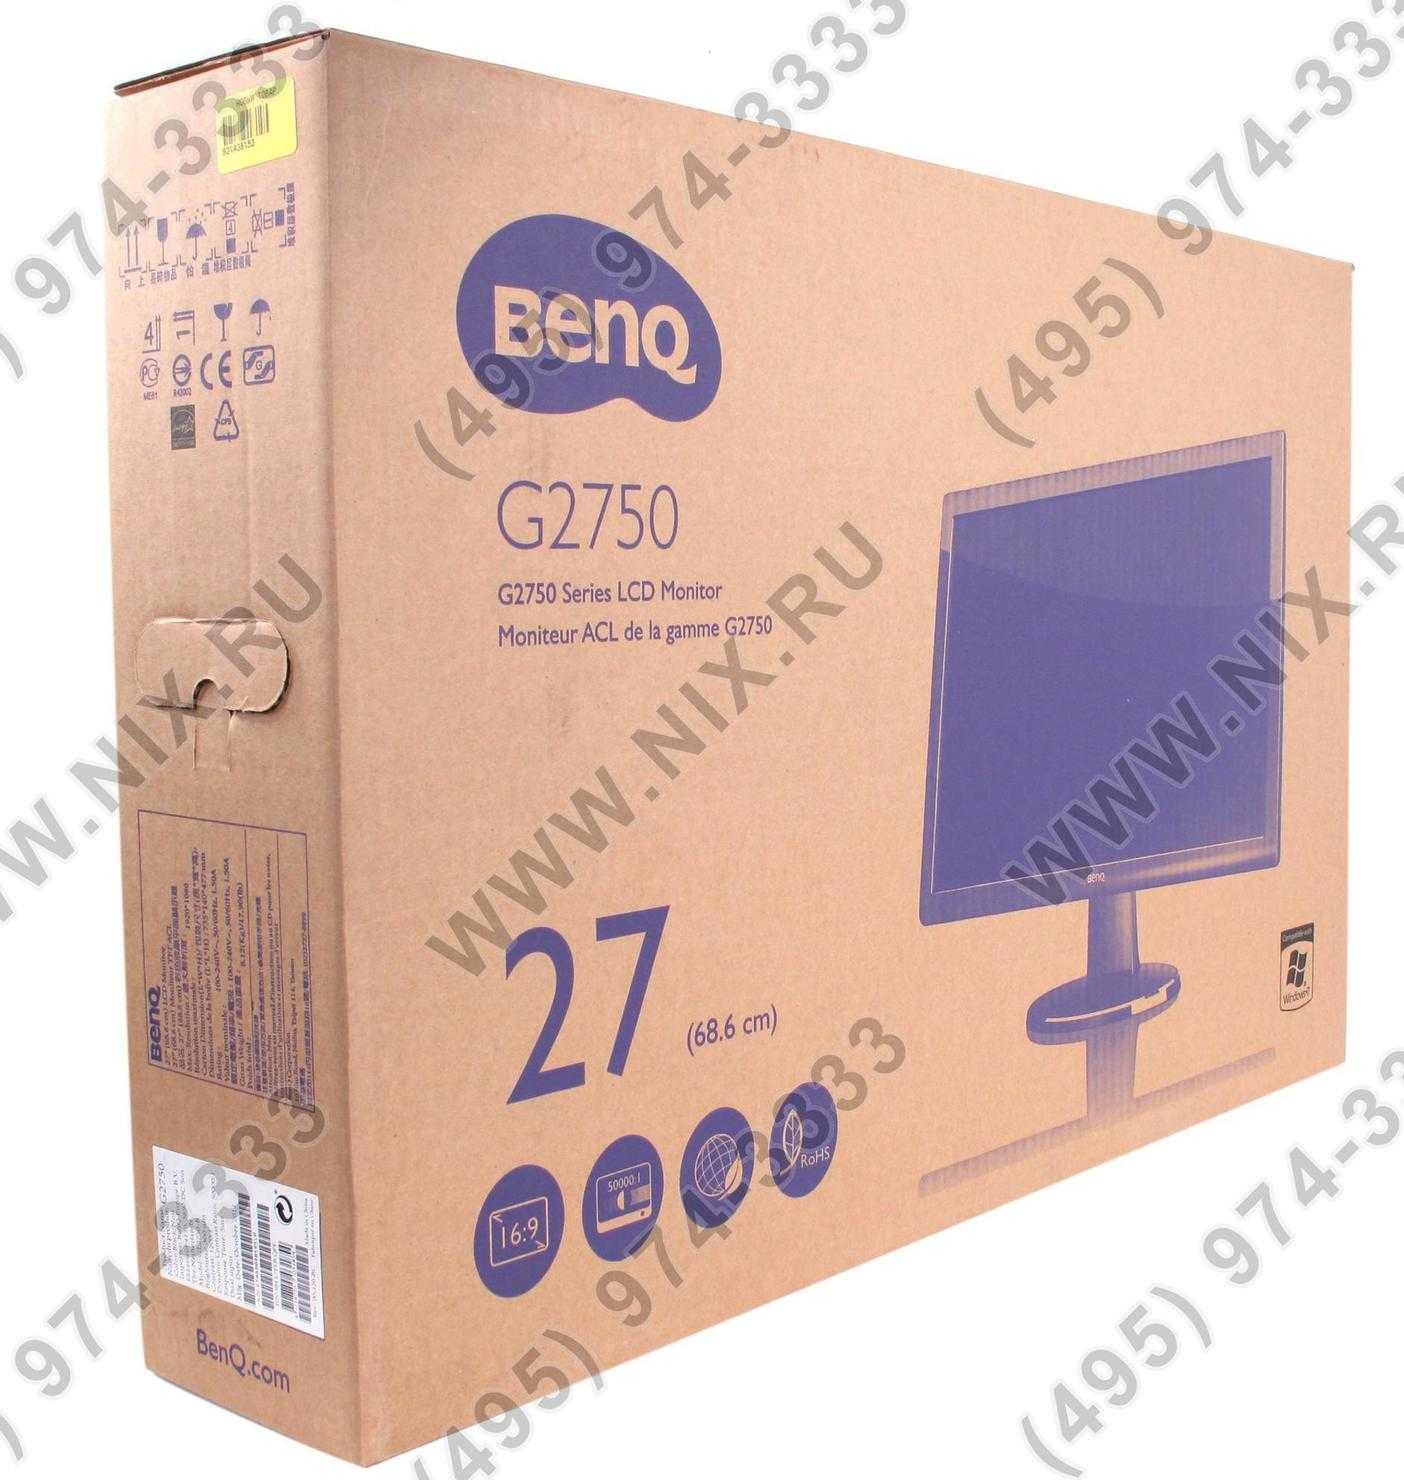 Benq g2750